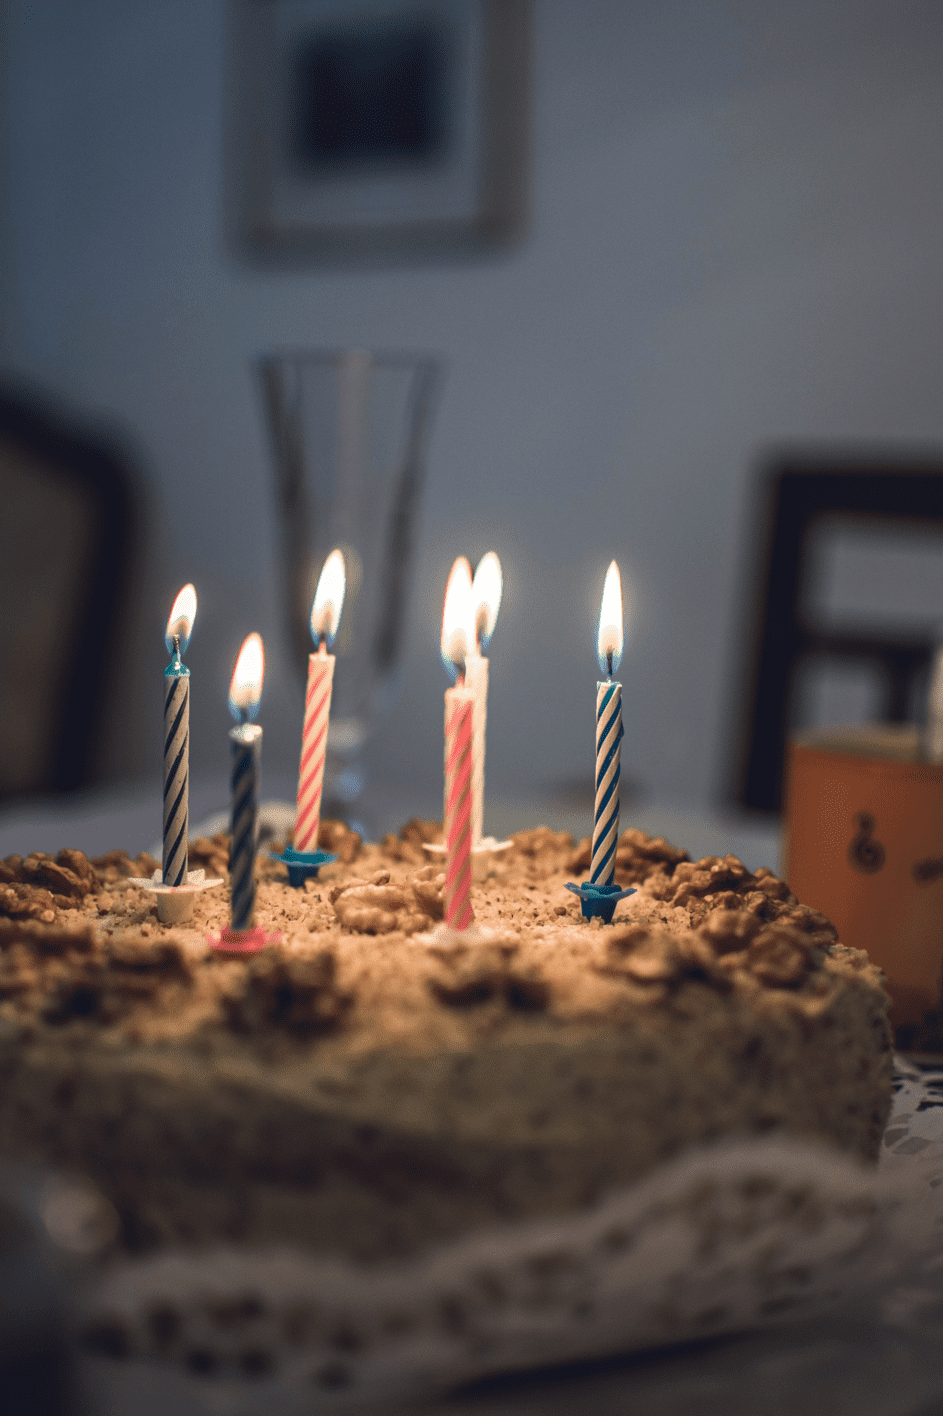 Elsas alte Nachbarn brachten ihr einen Geburtstagskuchen. | Quelle: Pexels